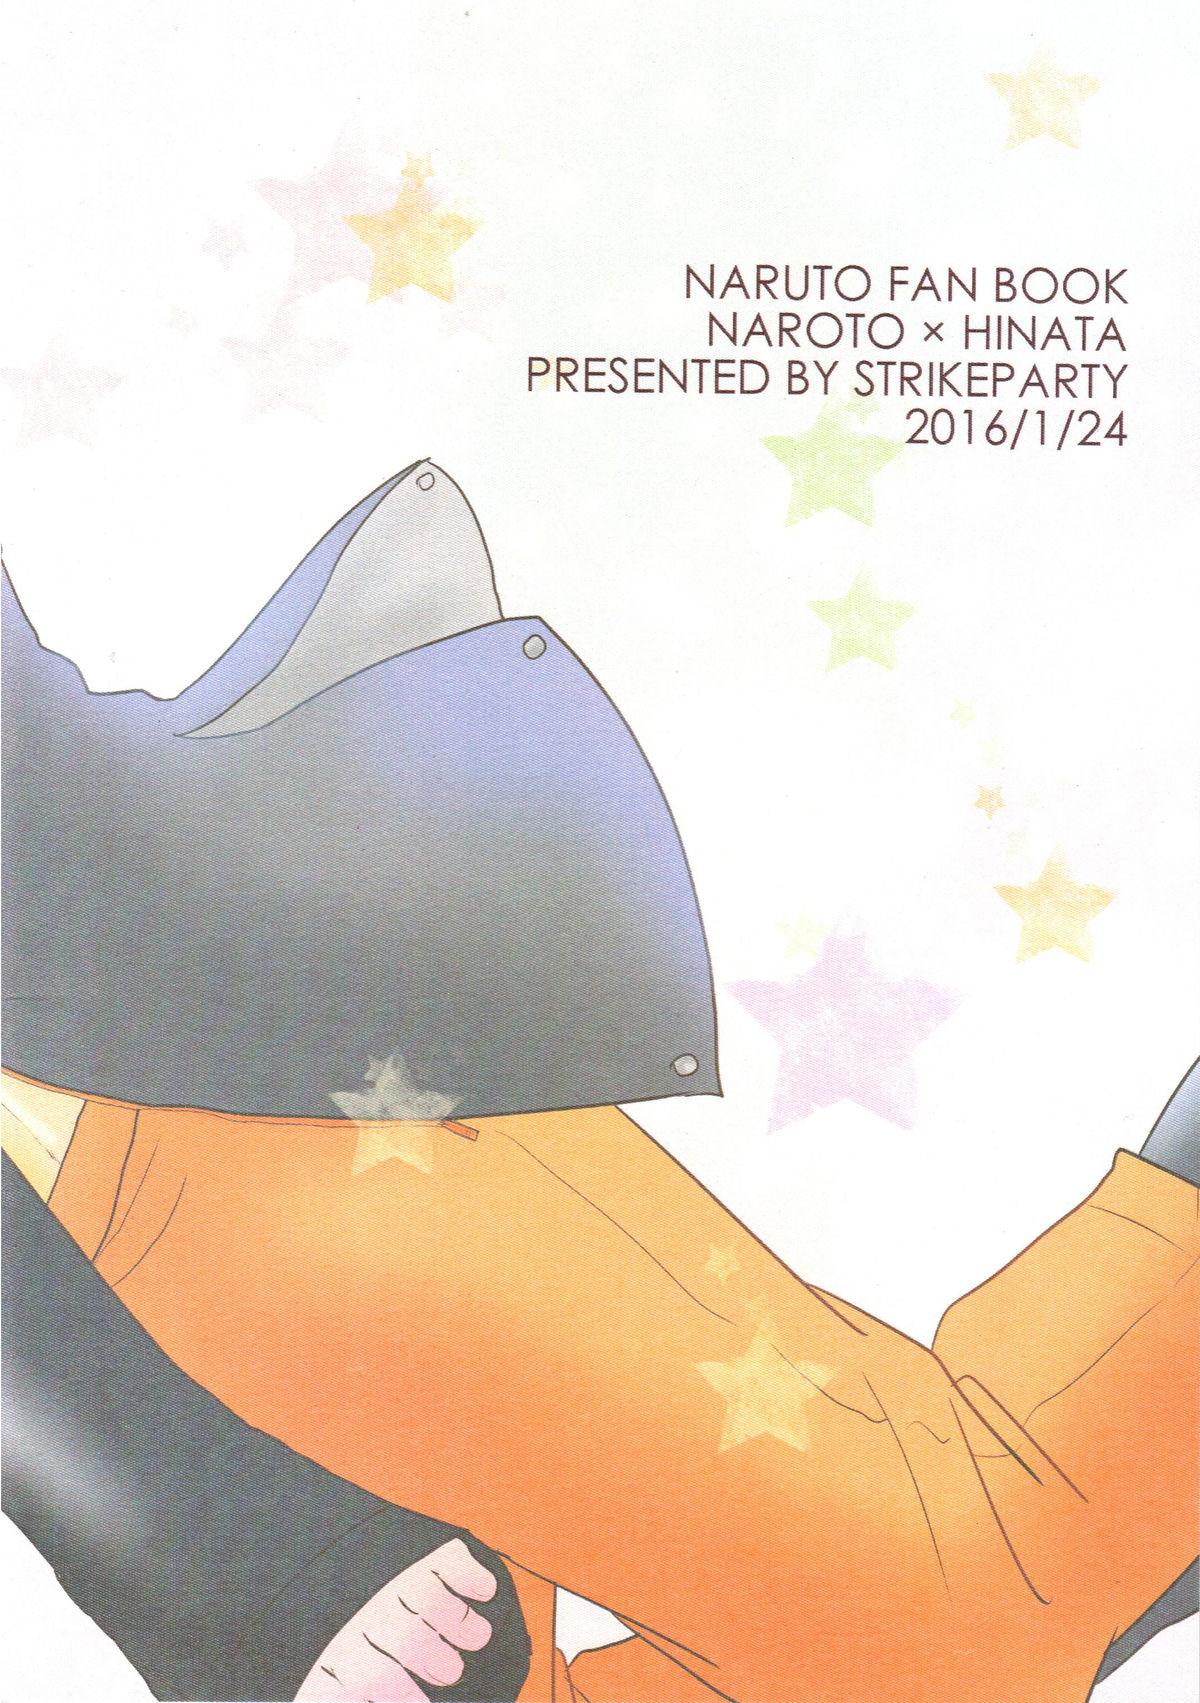 Peituda Kanata no omoi wa ryoute ni tokeru - Naruto Friends - Page 56